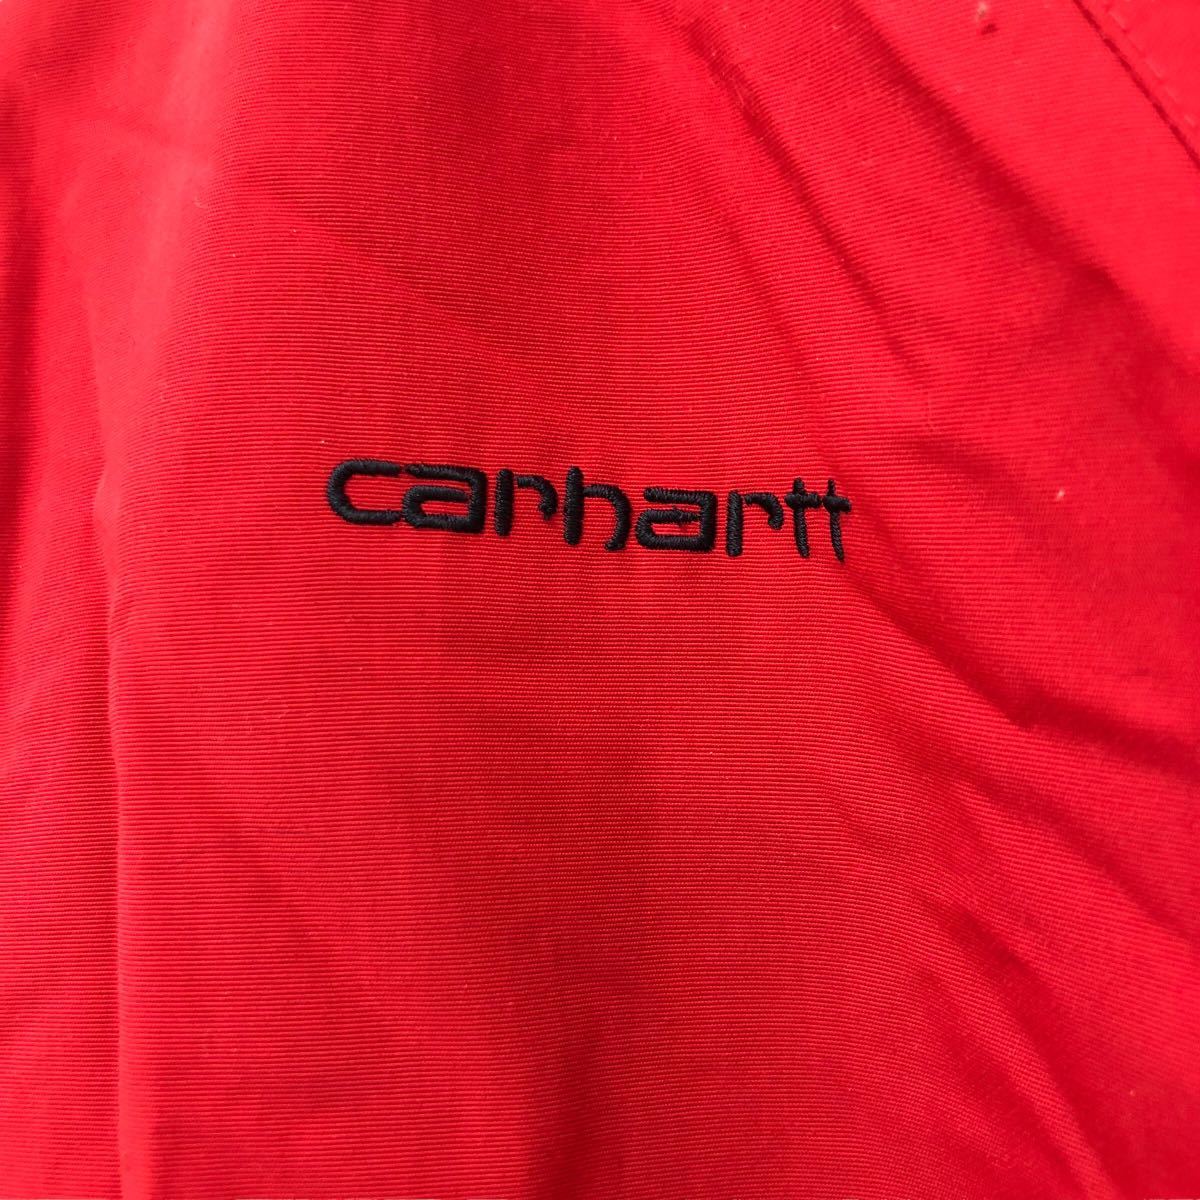 NB189 carhartt カーハート ナイロンジャケット フード ジップアップ ジャケット アウター 上着 羽織り 長袖 レッド 赤 レディース S_画像4